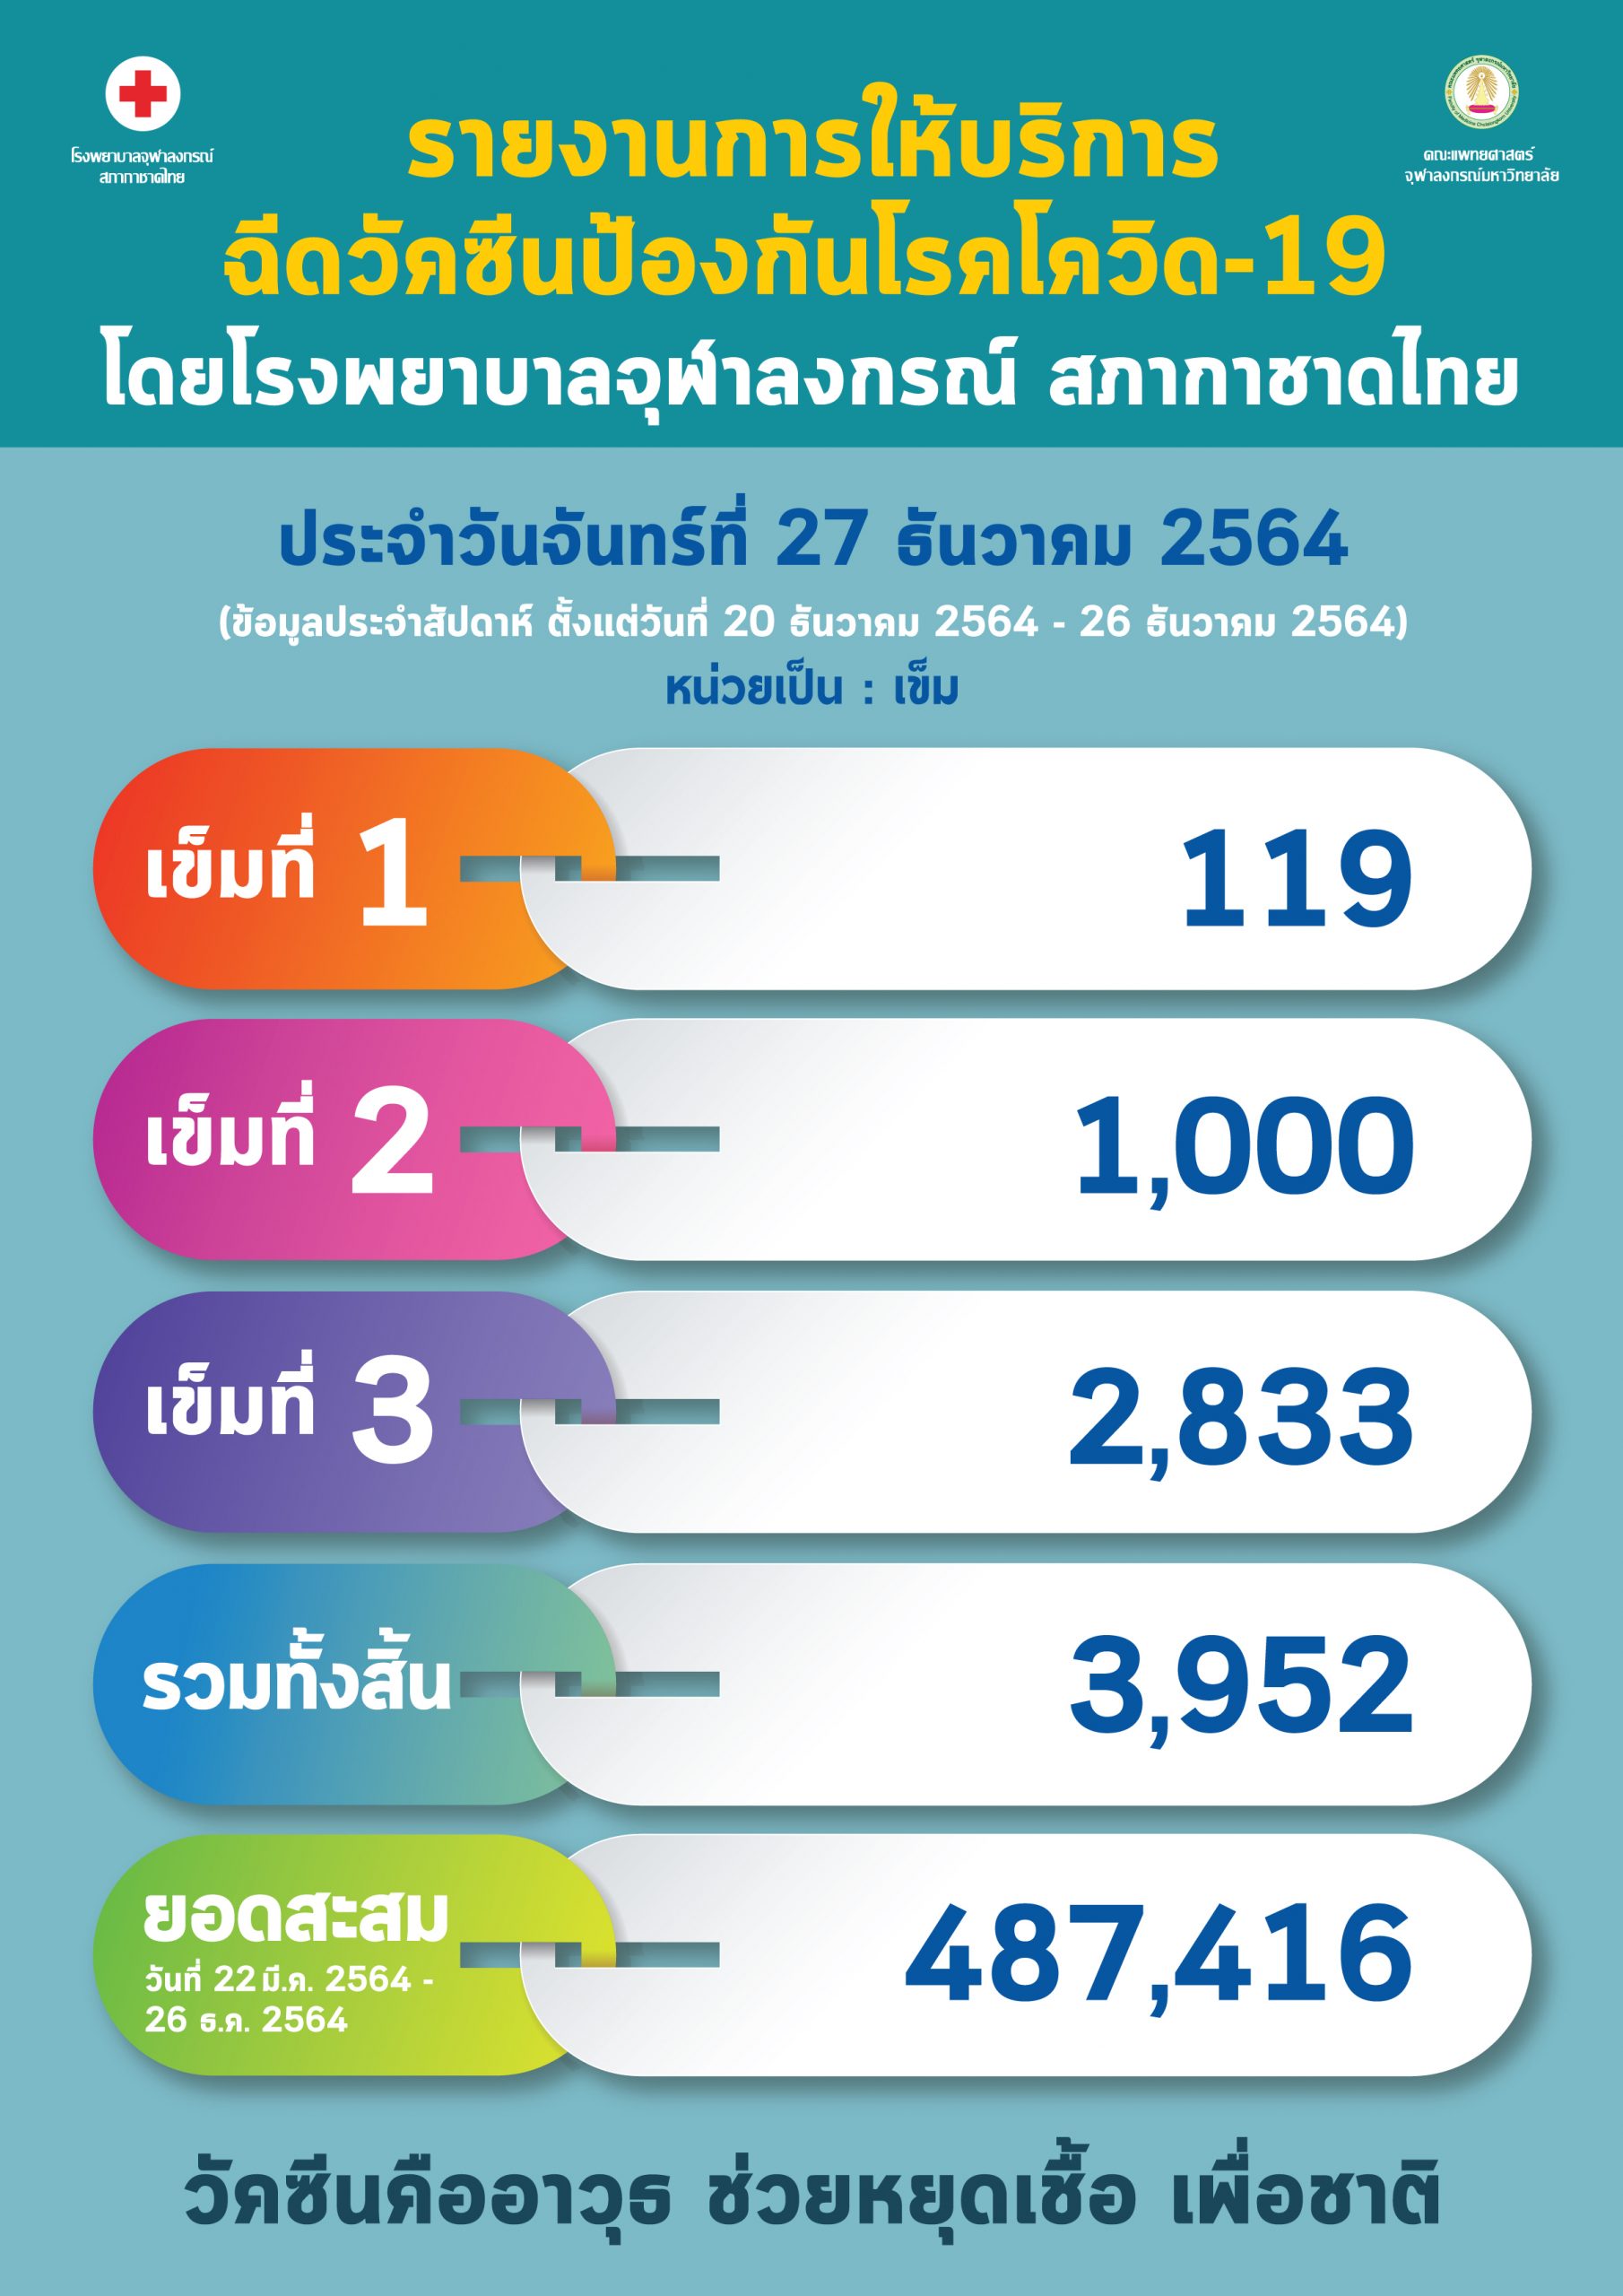 รายงานการให้บริการฉีดวัคซีนป้องกันโรคโควิด-19 โดยโรงพยาบาลจุฬาลงกรณ์ สภากาชาดไทย ประจำวันจันทร์ที่ 27 ธันวาคม 2564